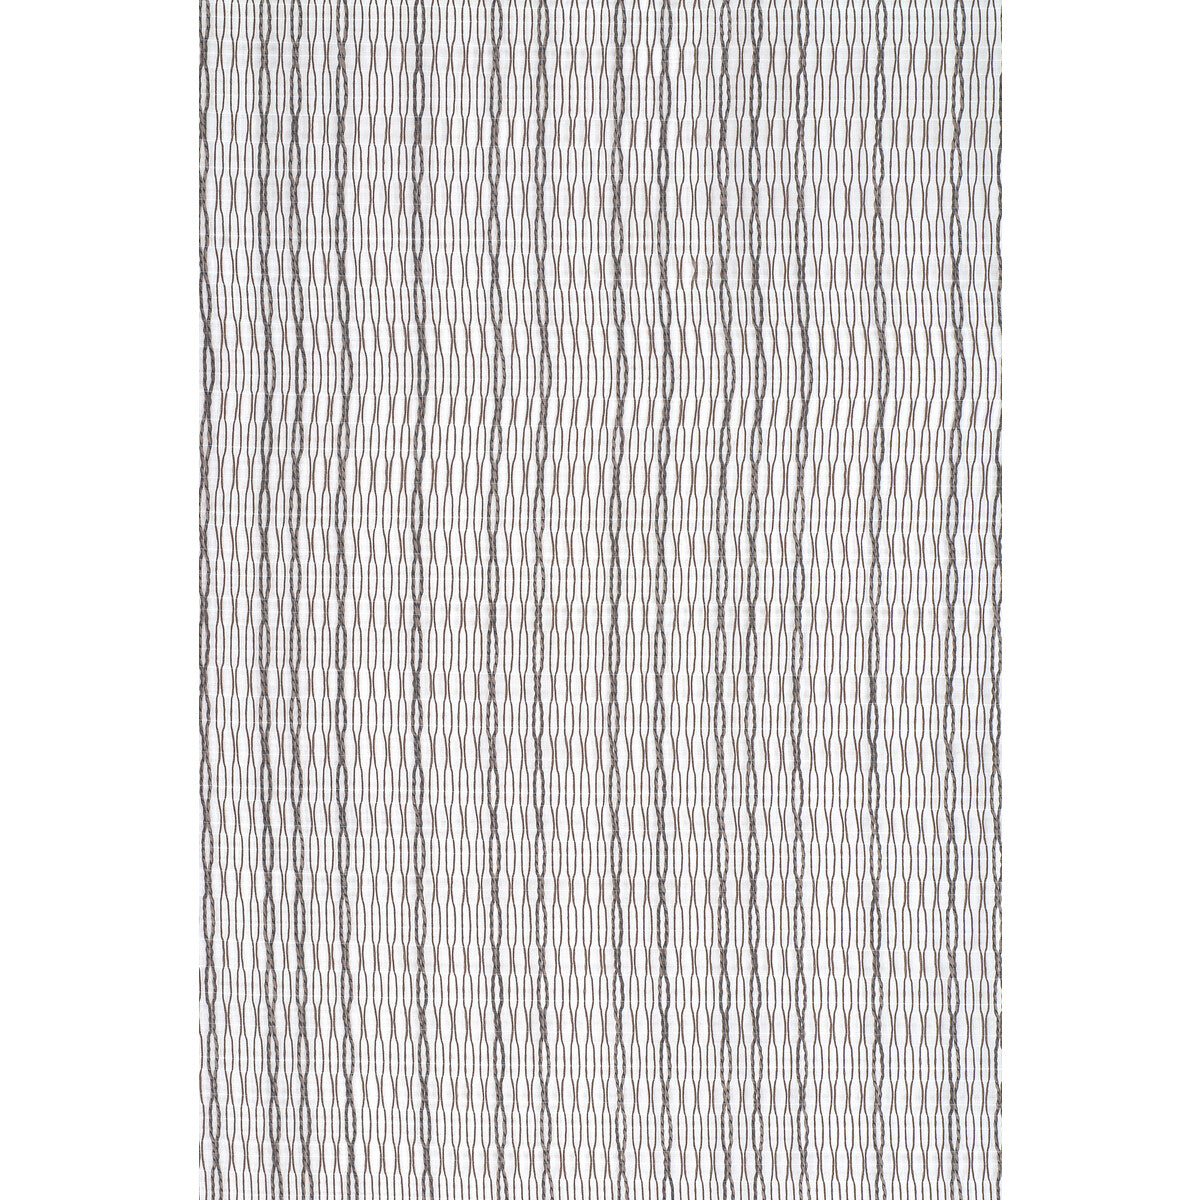 Kravet Basics fabric in 4302-6 color - pattern 4302.6.0 - by Kravet Basics